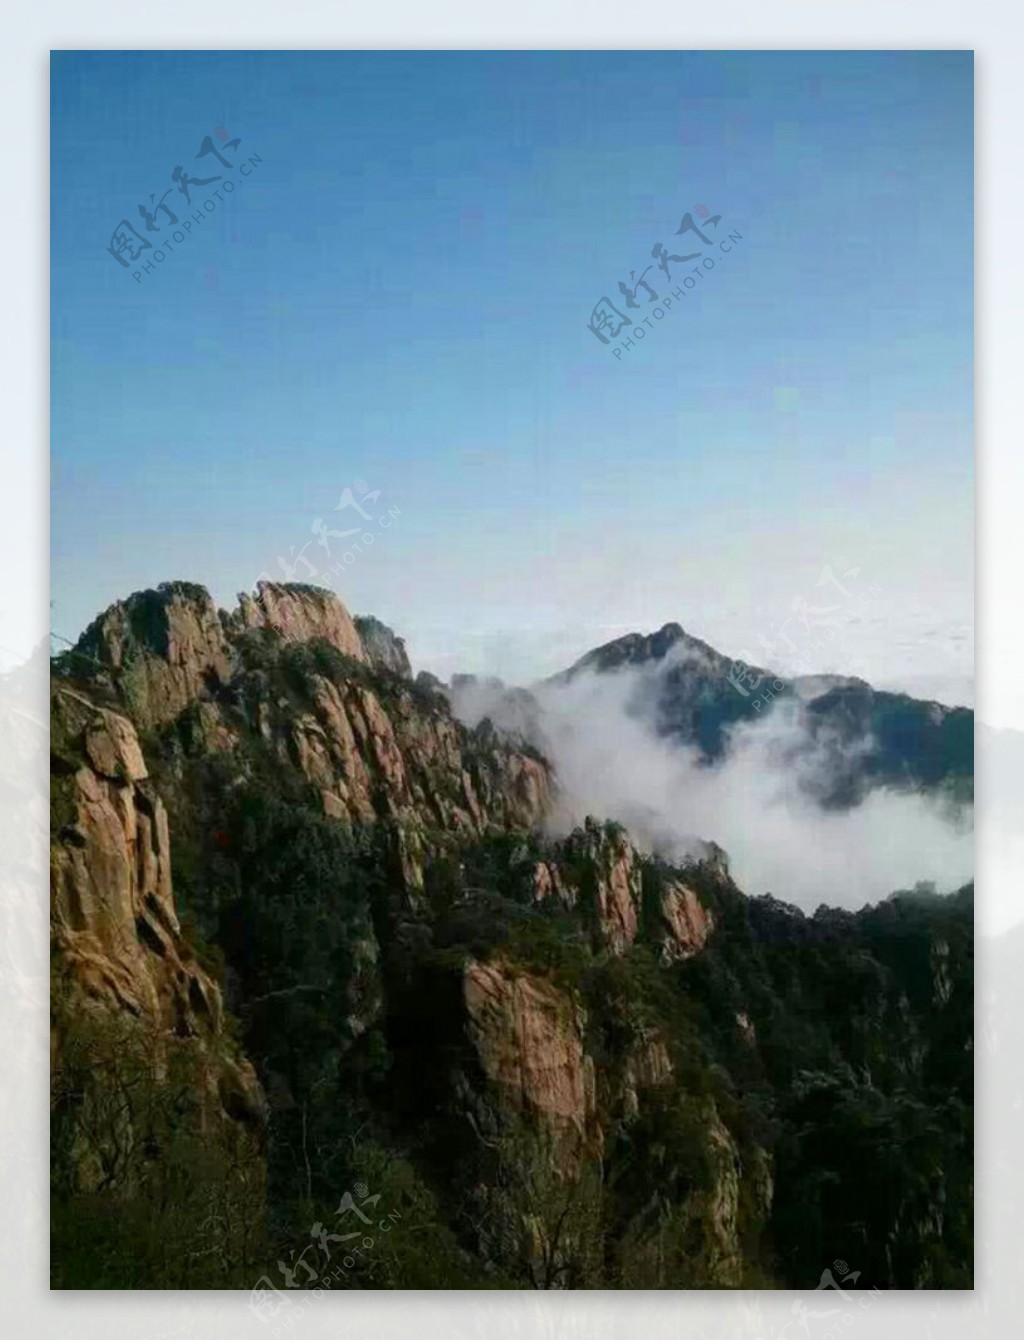 黄山云海风景图片